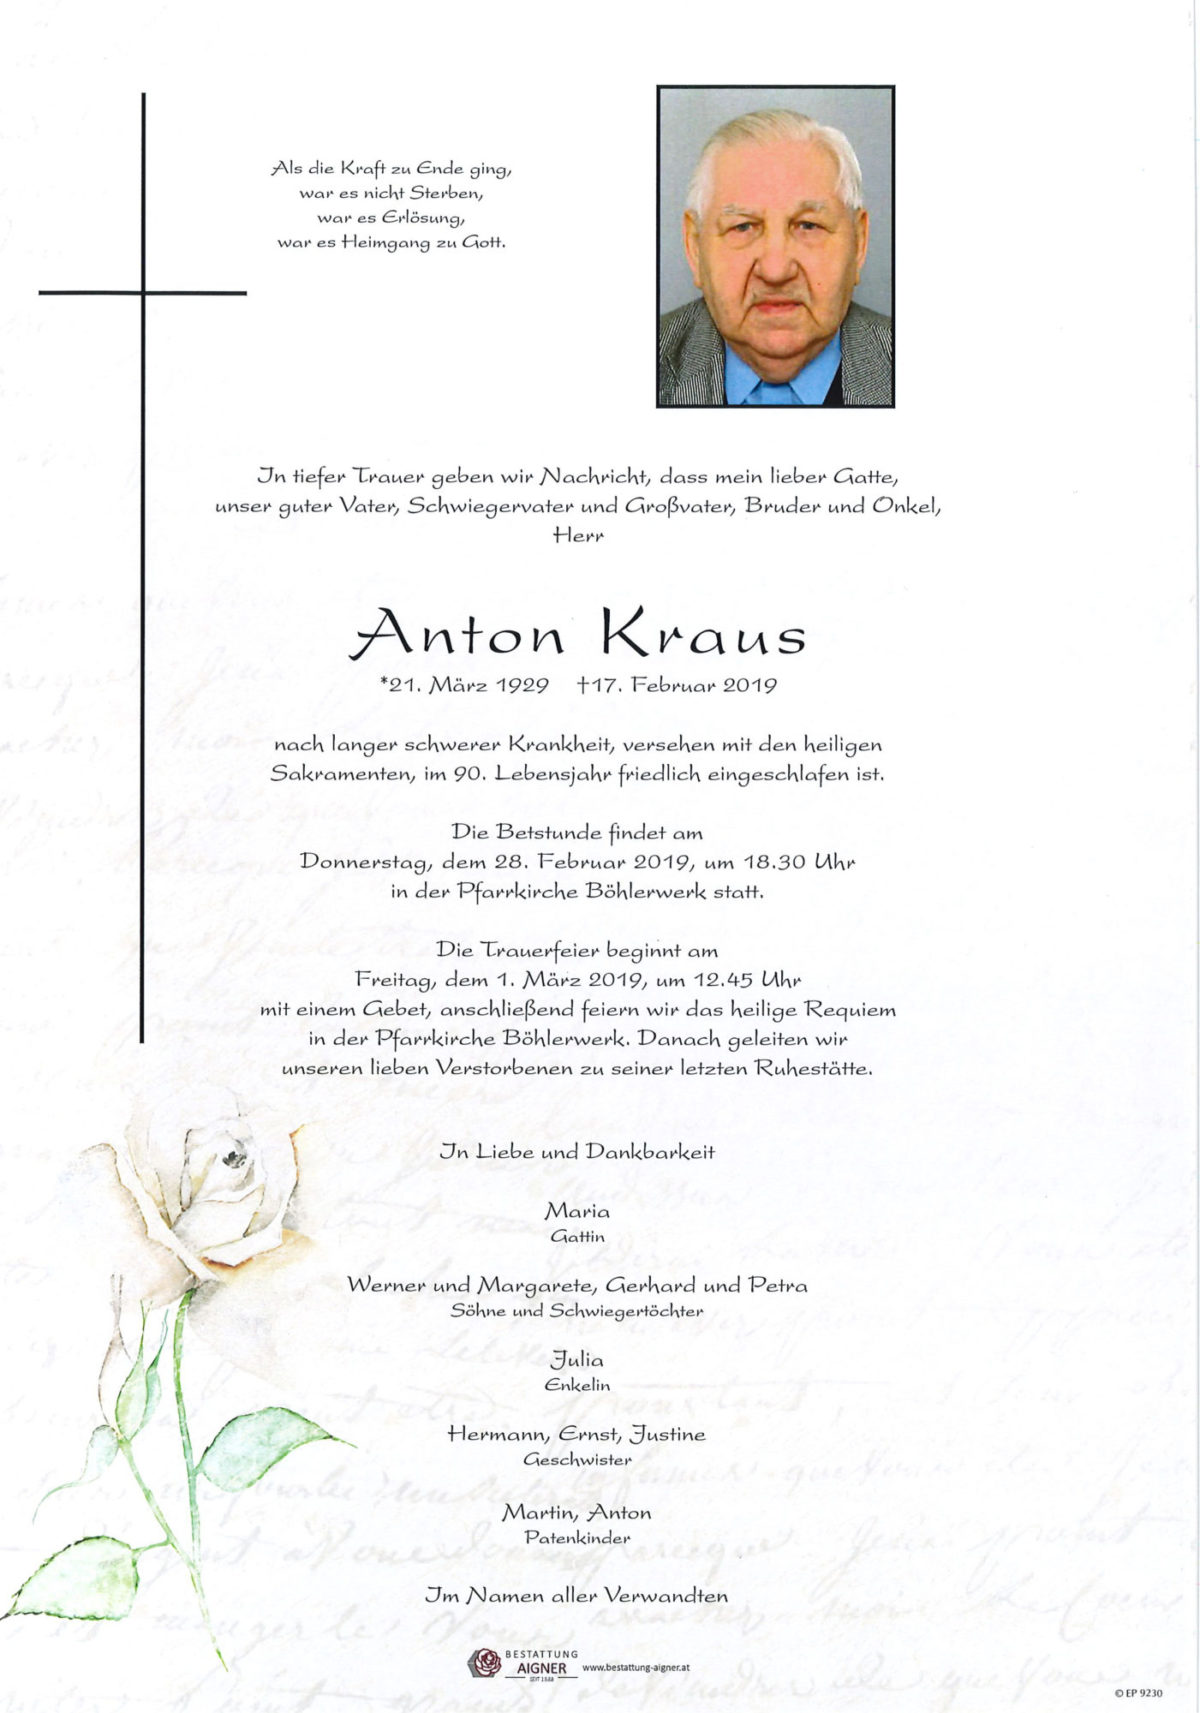 Anton Kraus